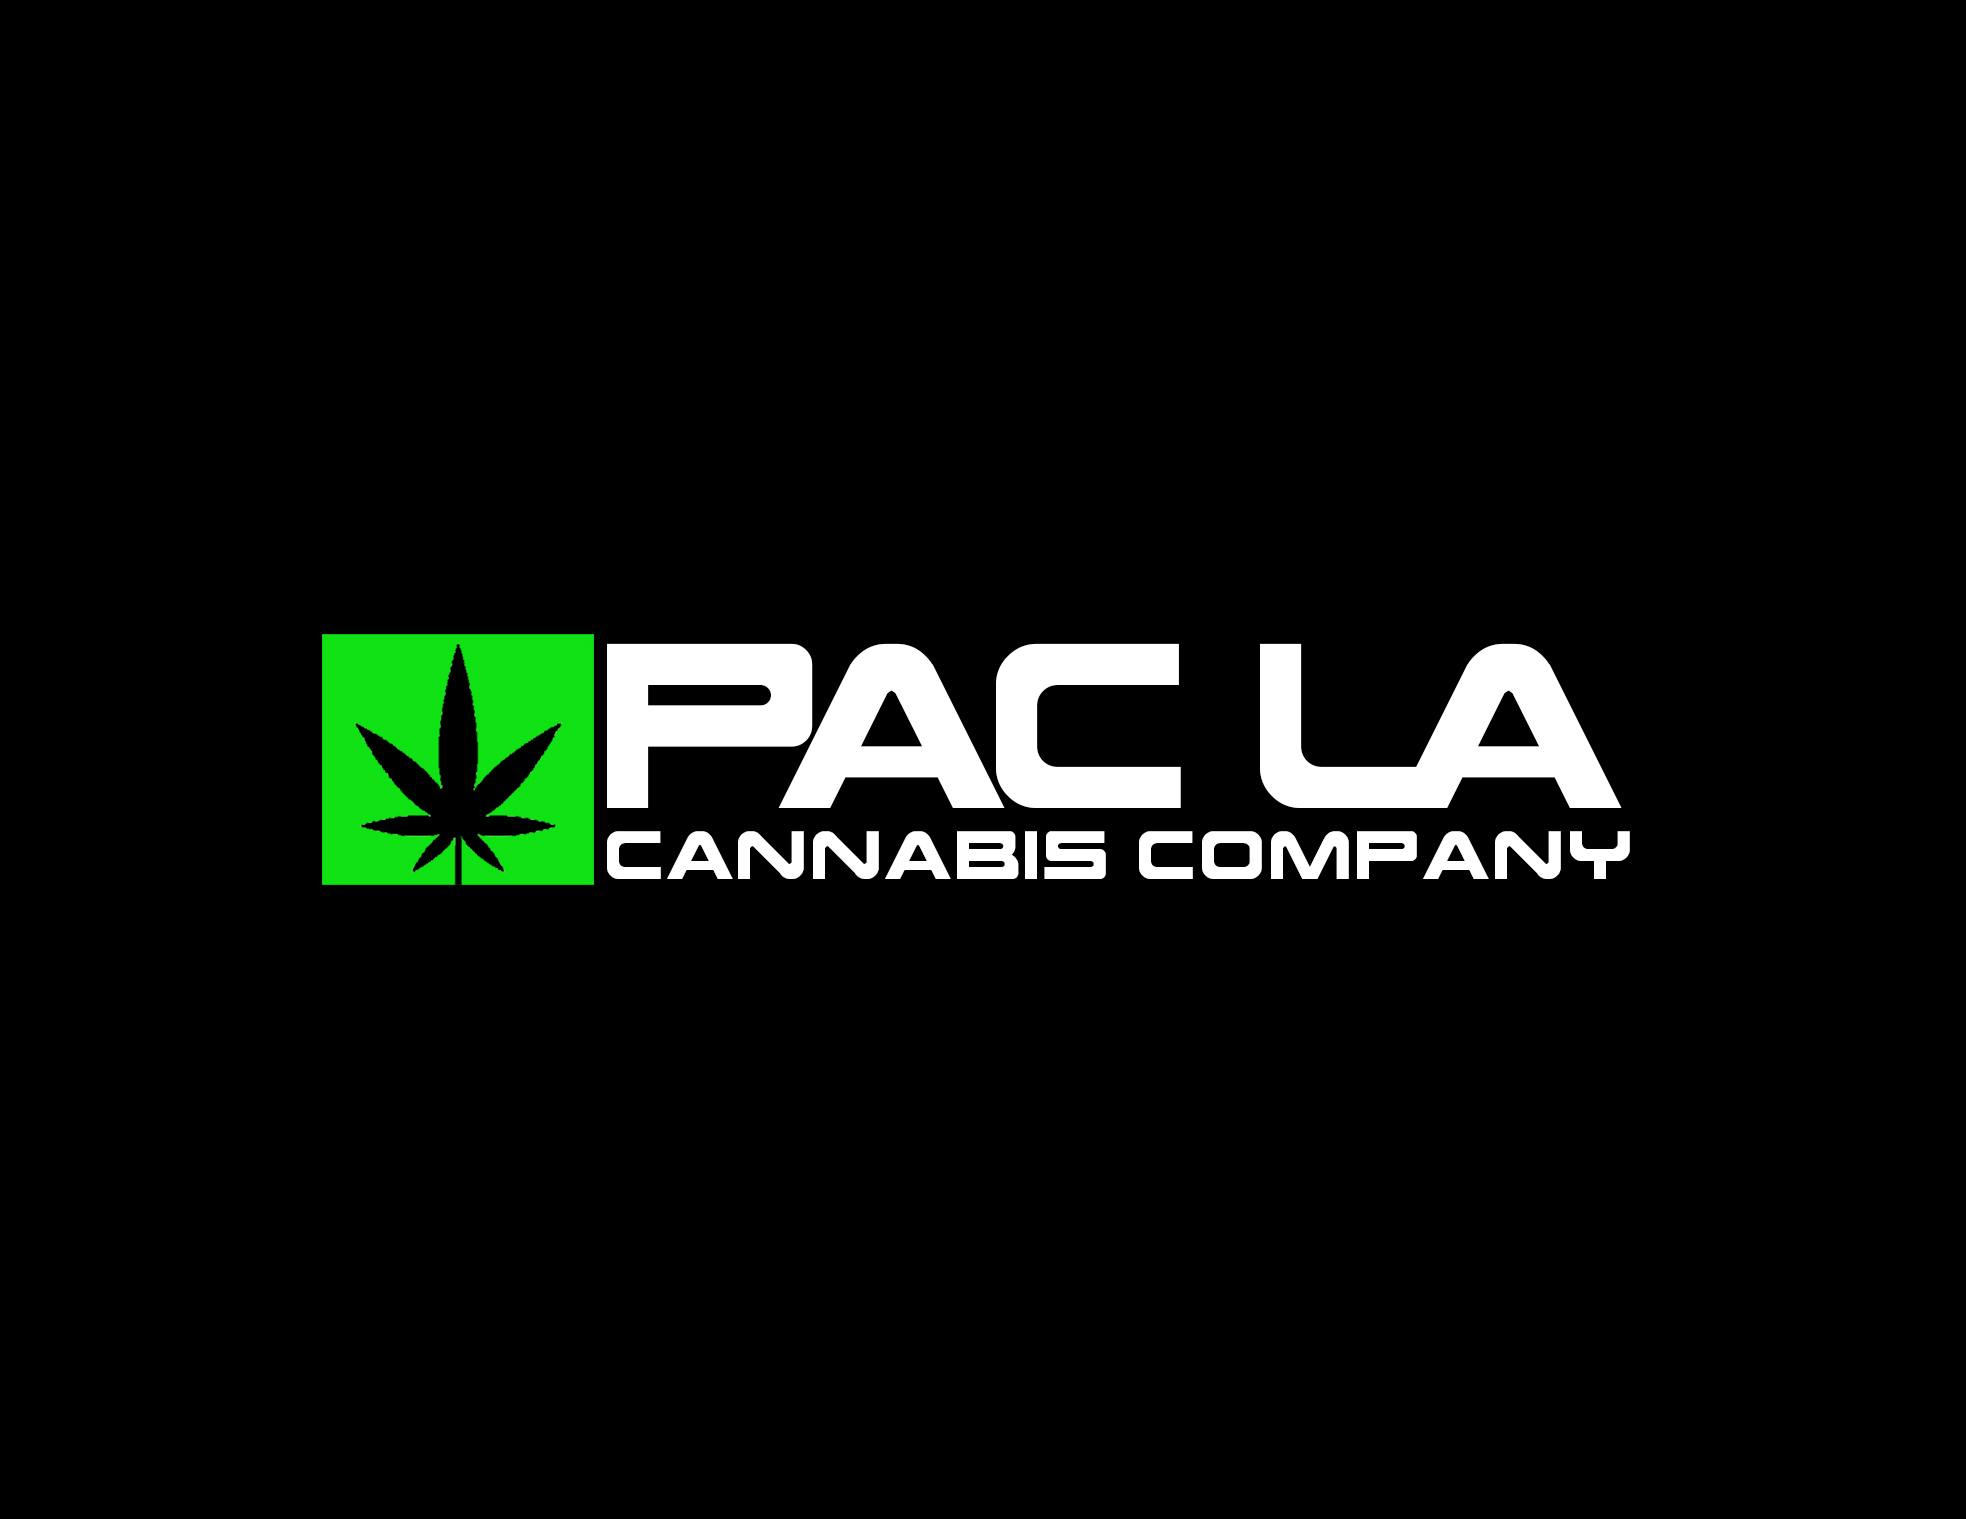 PAC LA-logo